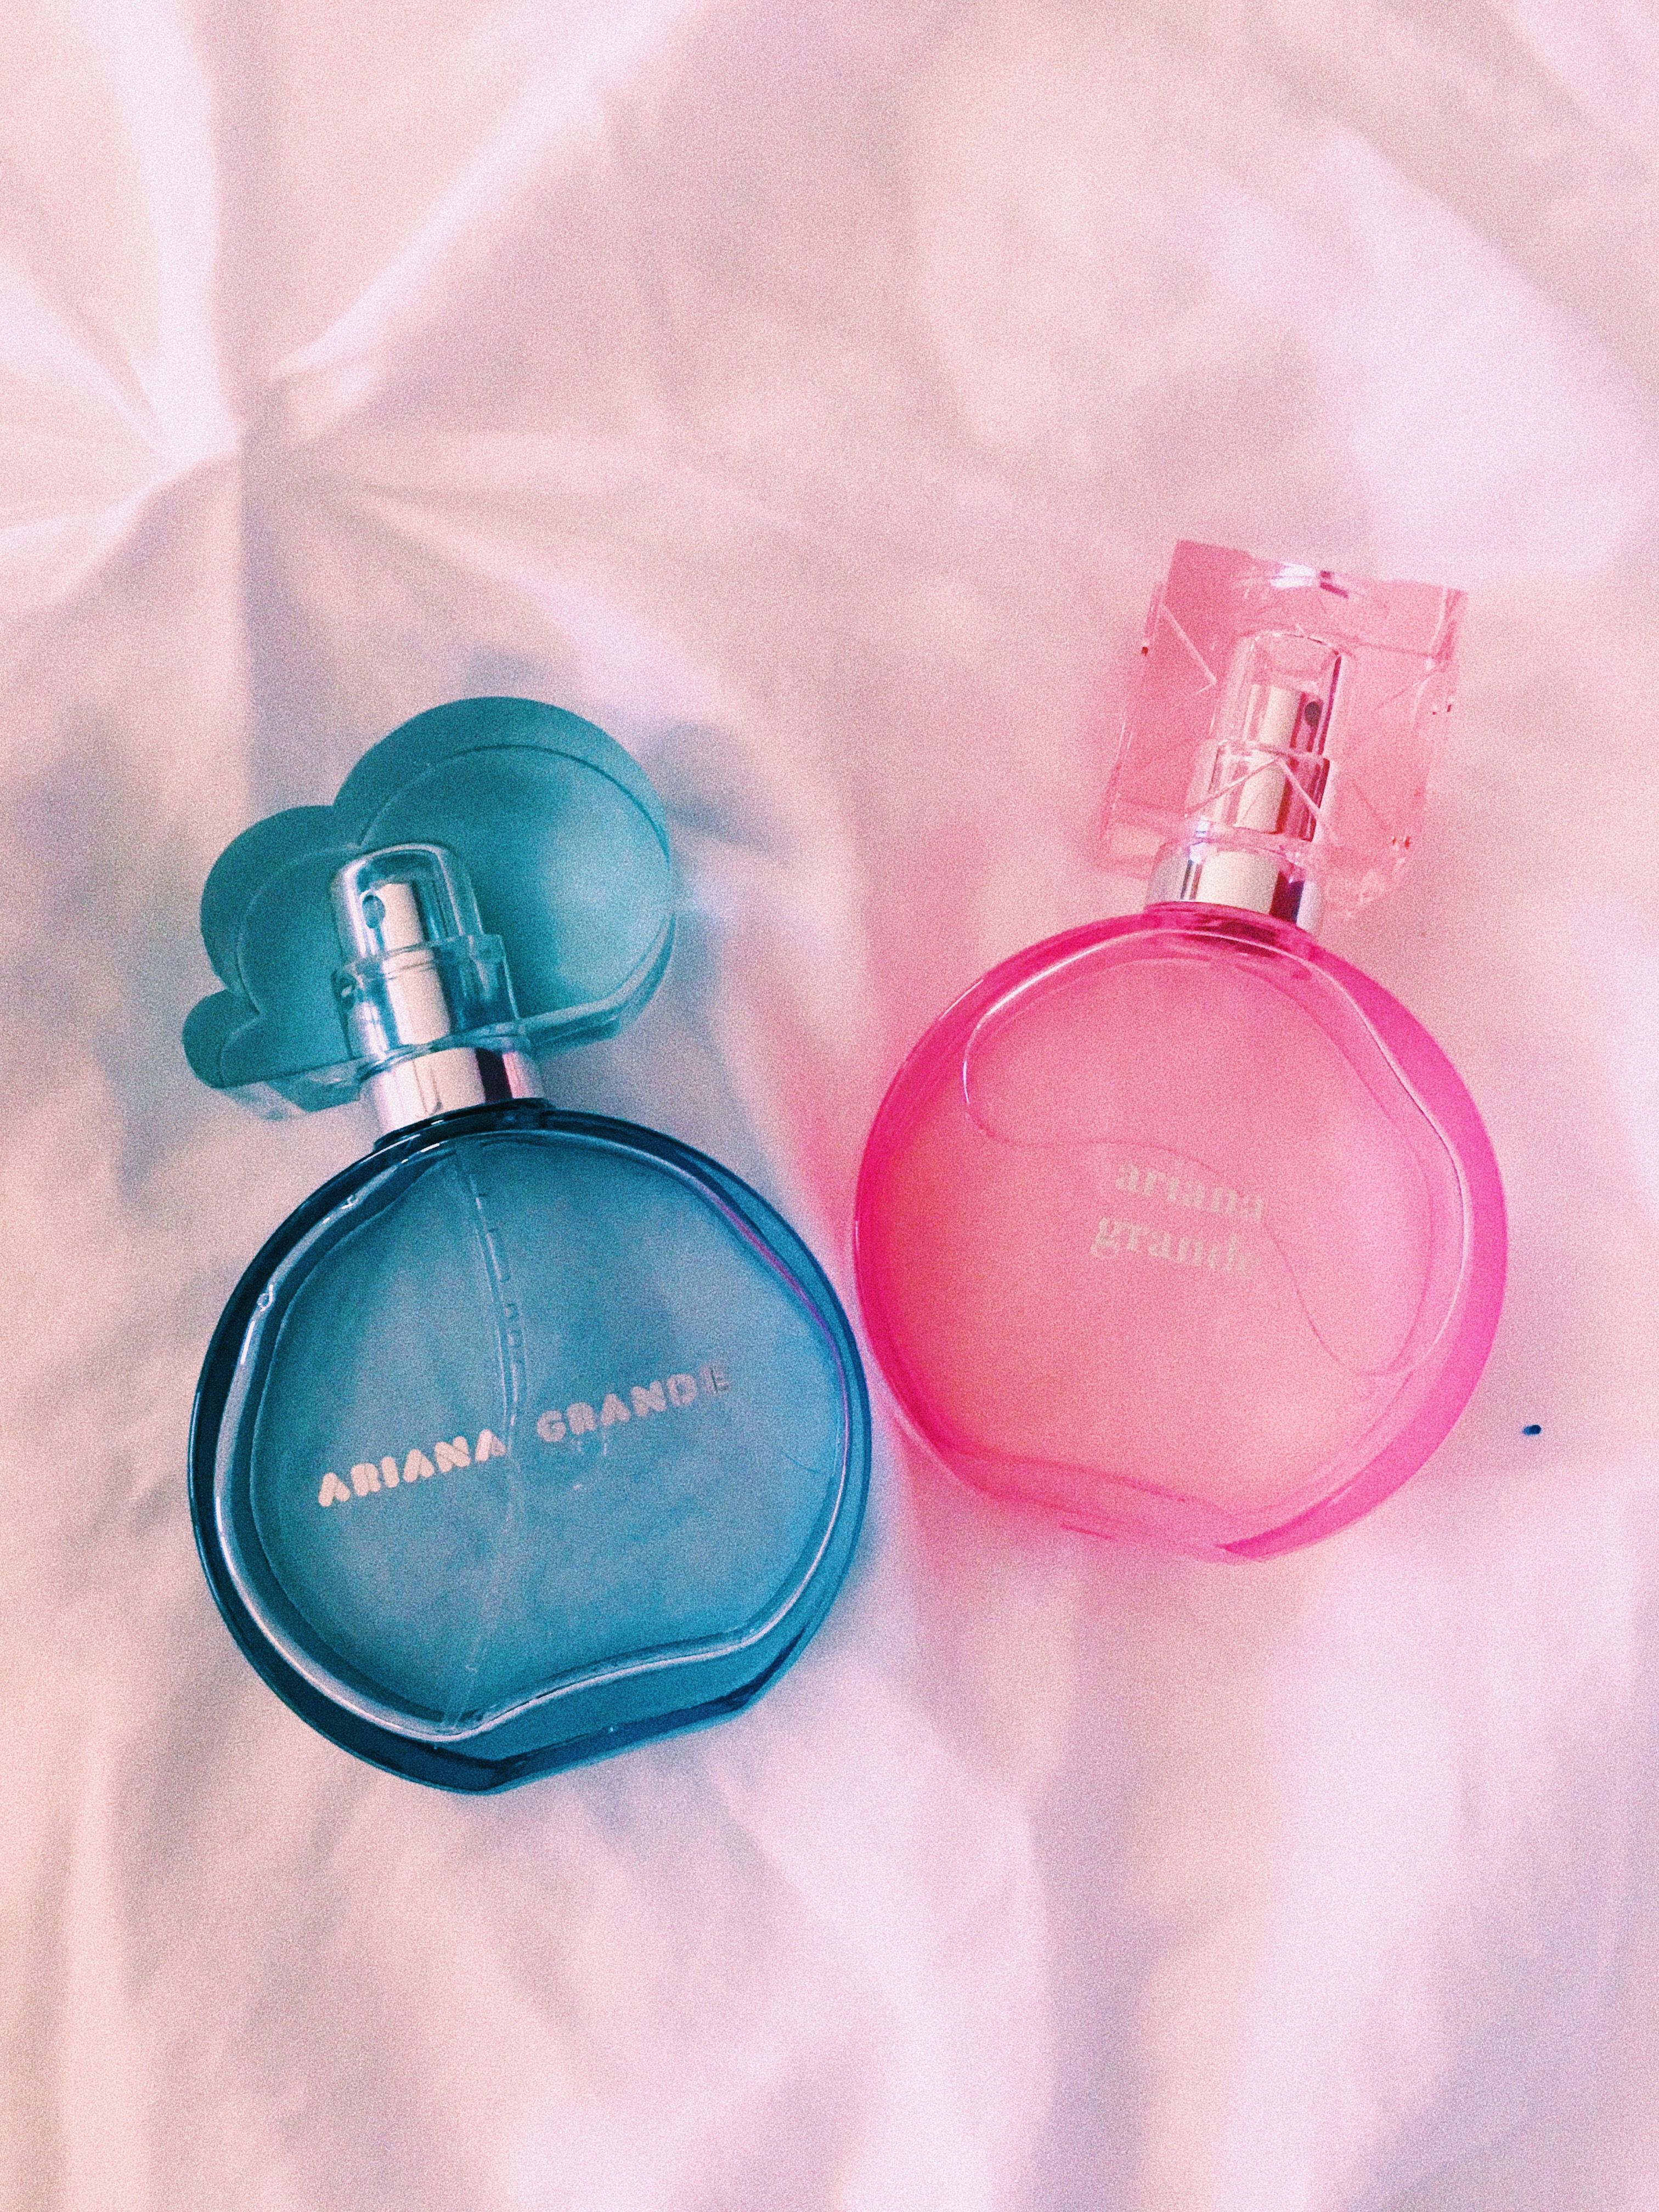 Ariana perfume, Ariana grande perfume